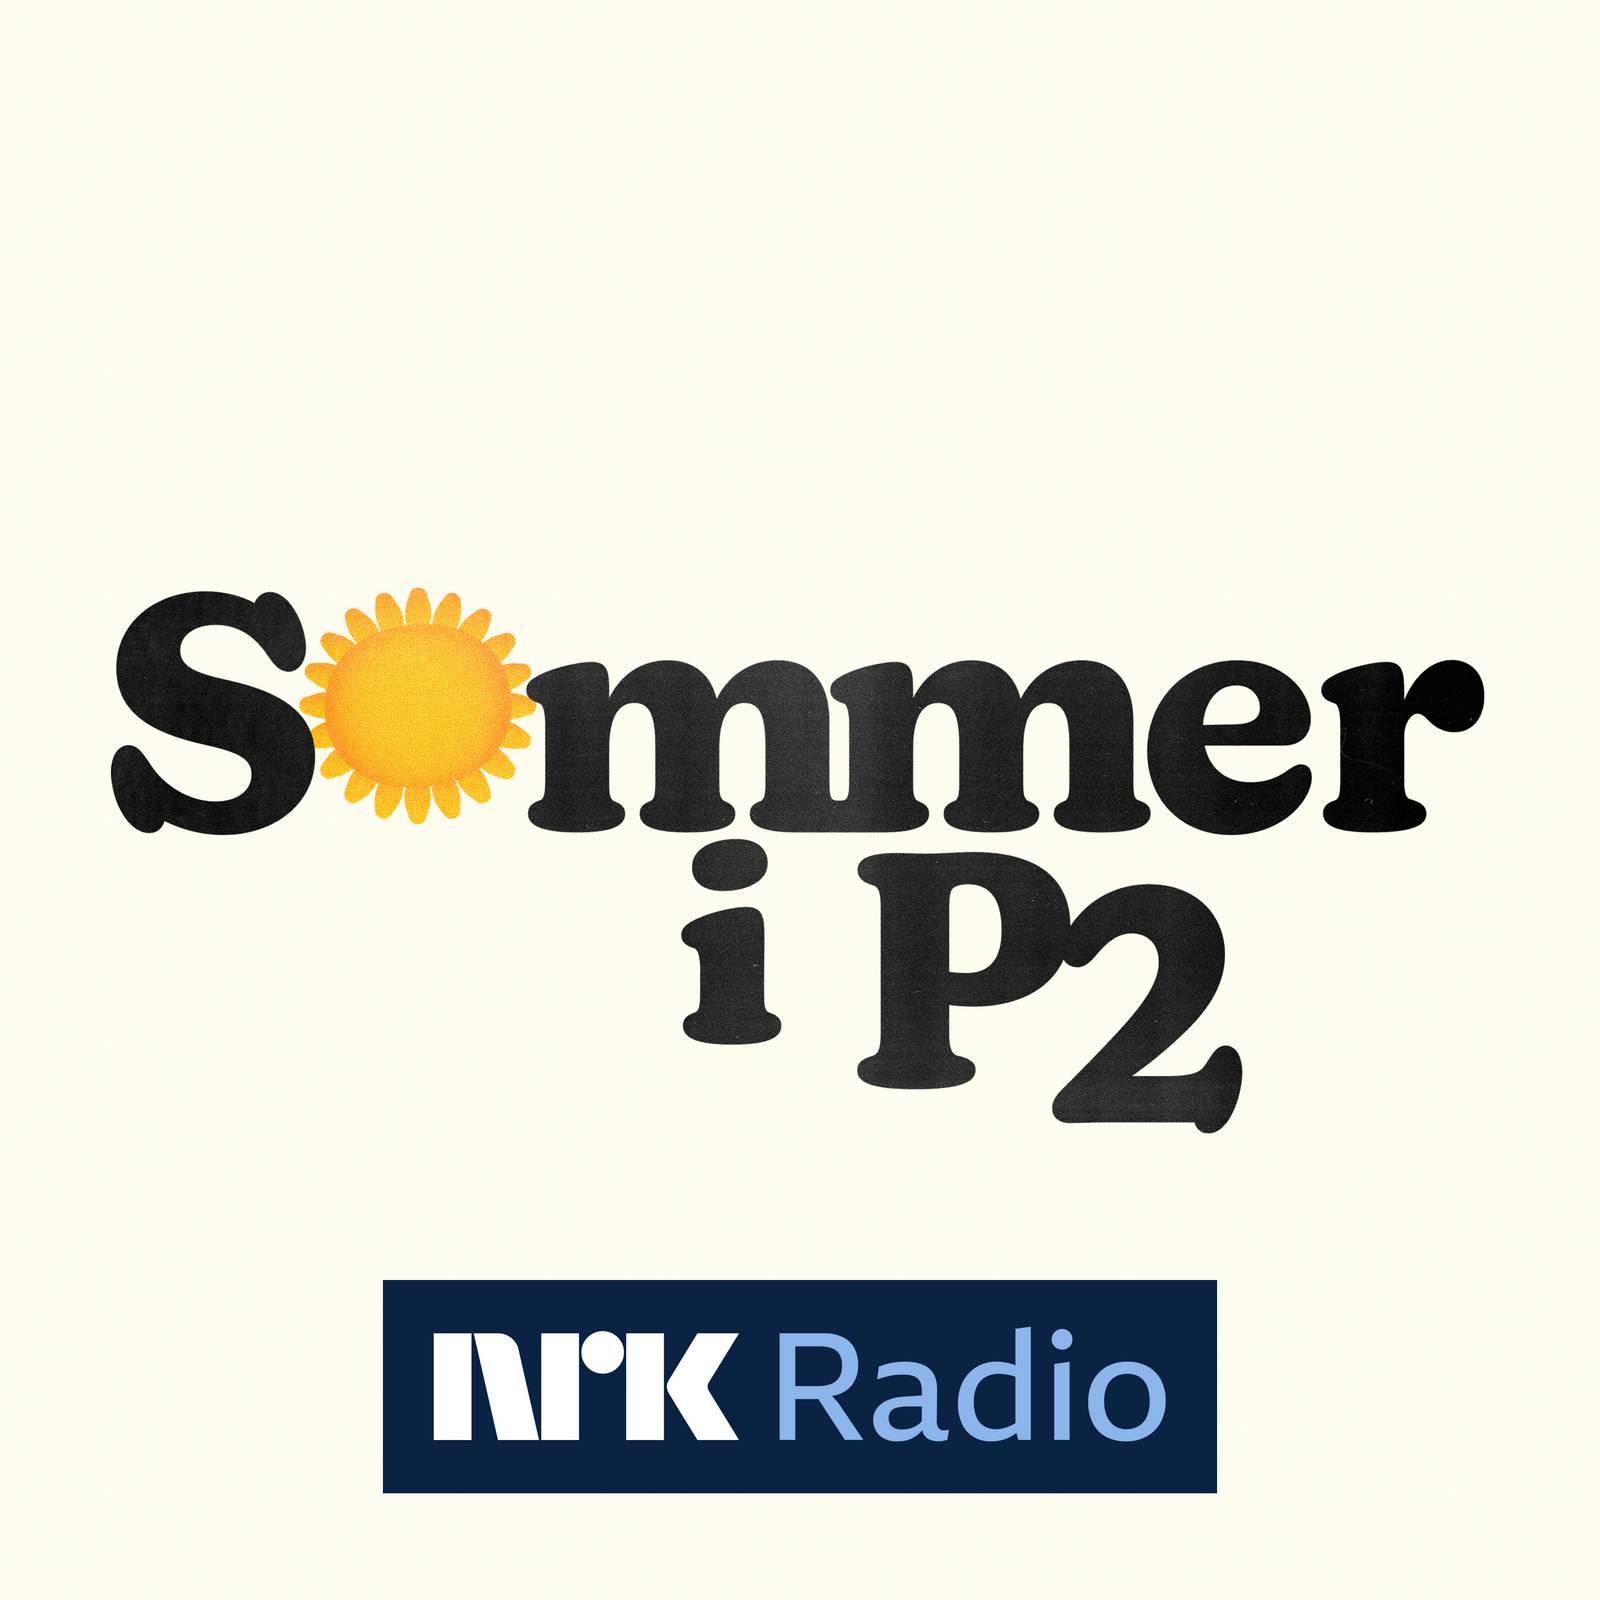 Sommer i P2 finner du i NRK Radio-appen